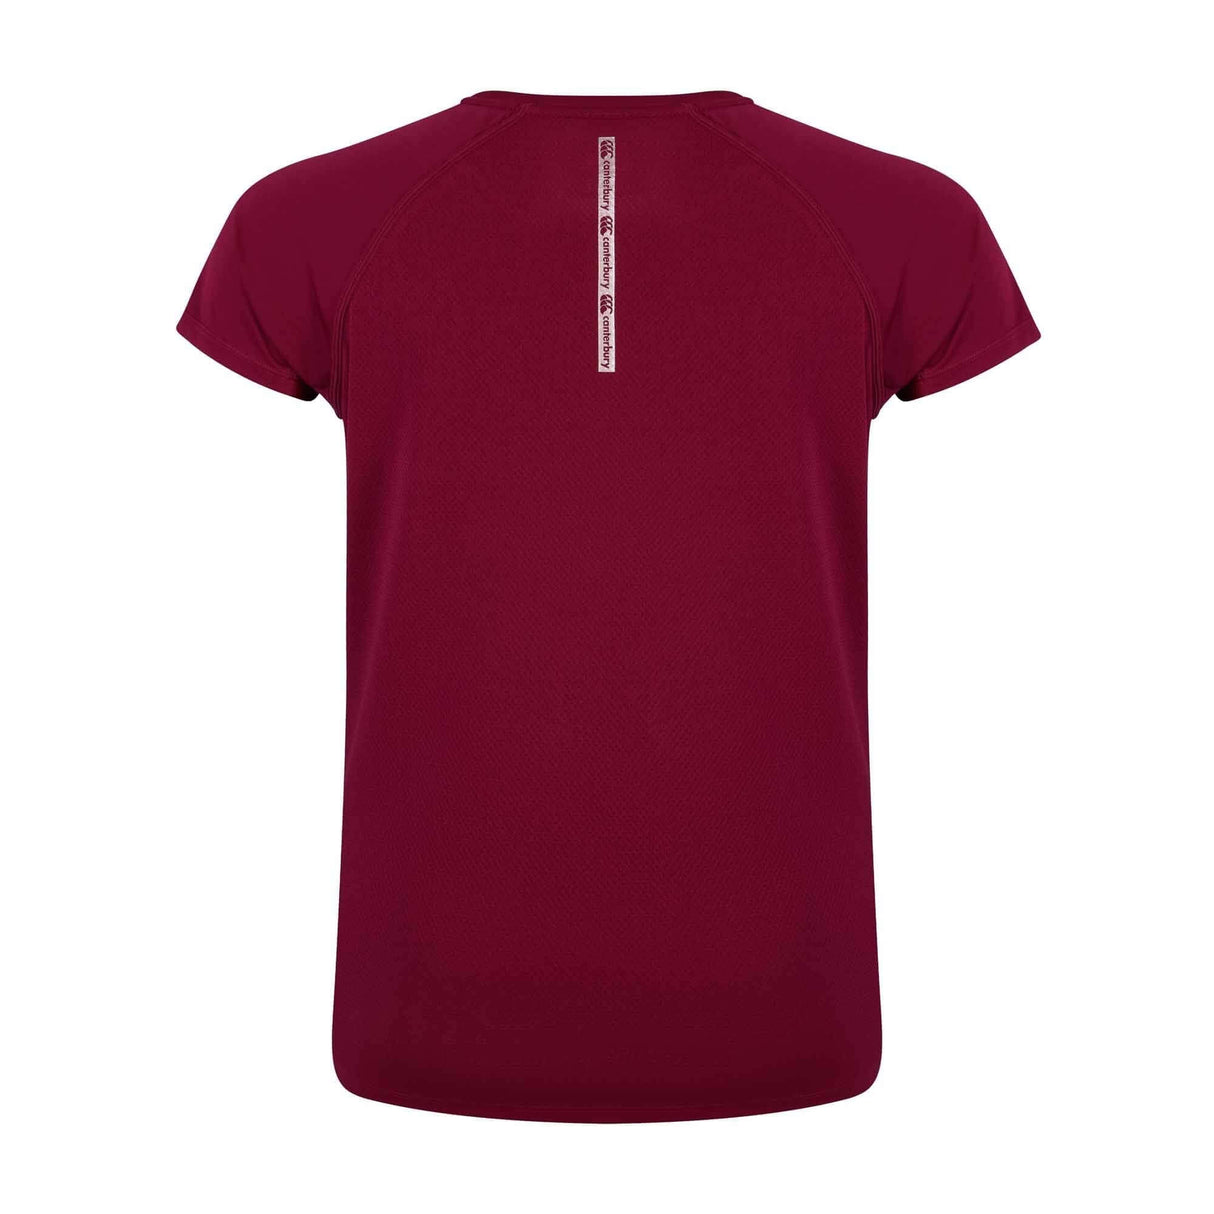 Canterbury Lightspeed Womens Superlight T-Shirt |Womens T-Shirt | Canterbury | Absolute Rugby